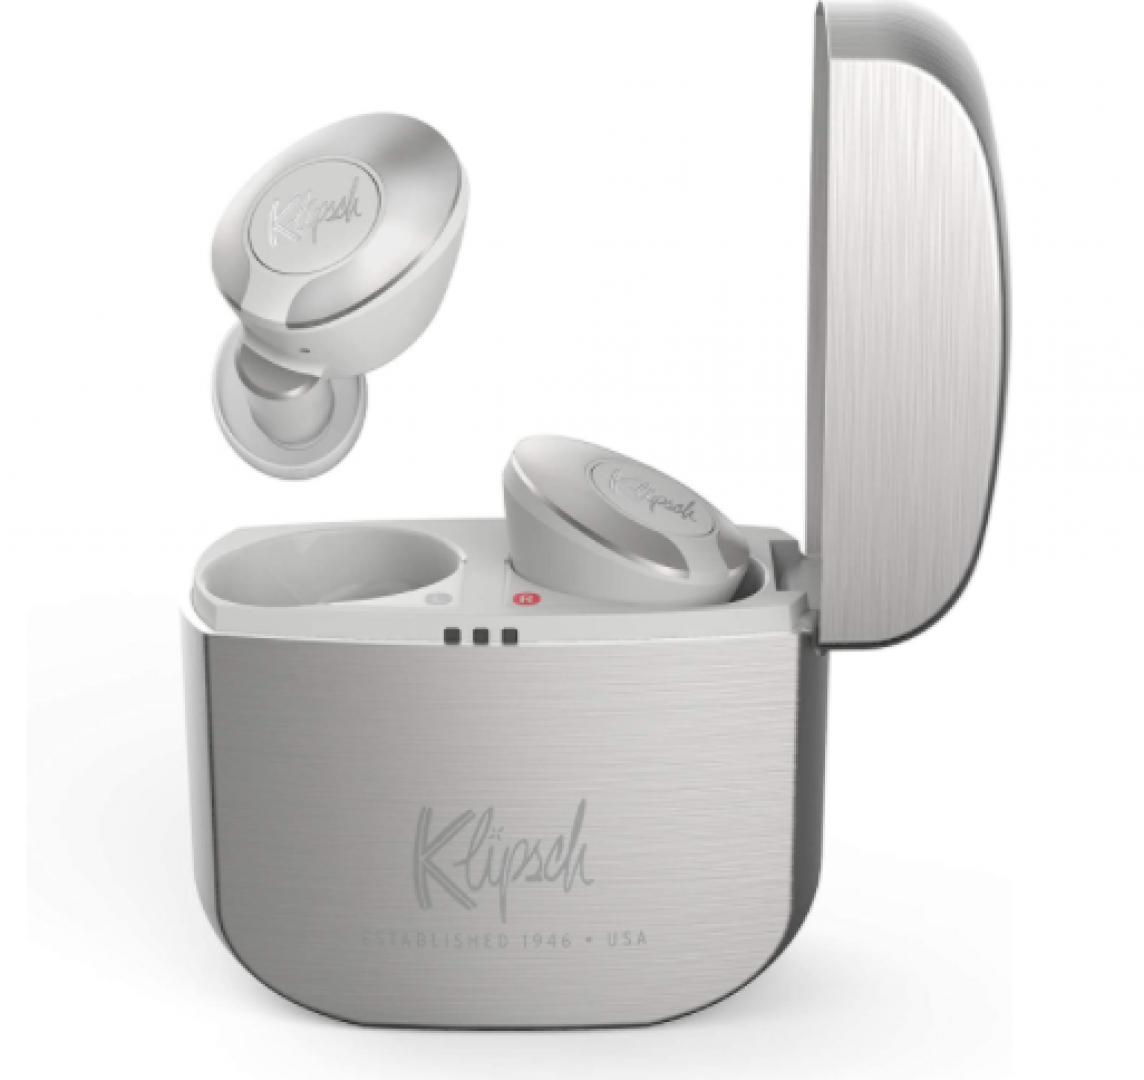 Tai nghe Klipsch T5 II True Wireless